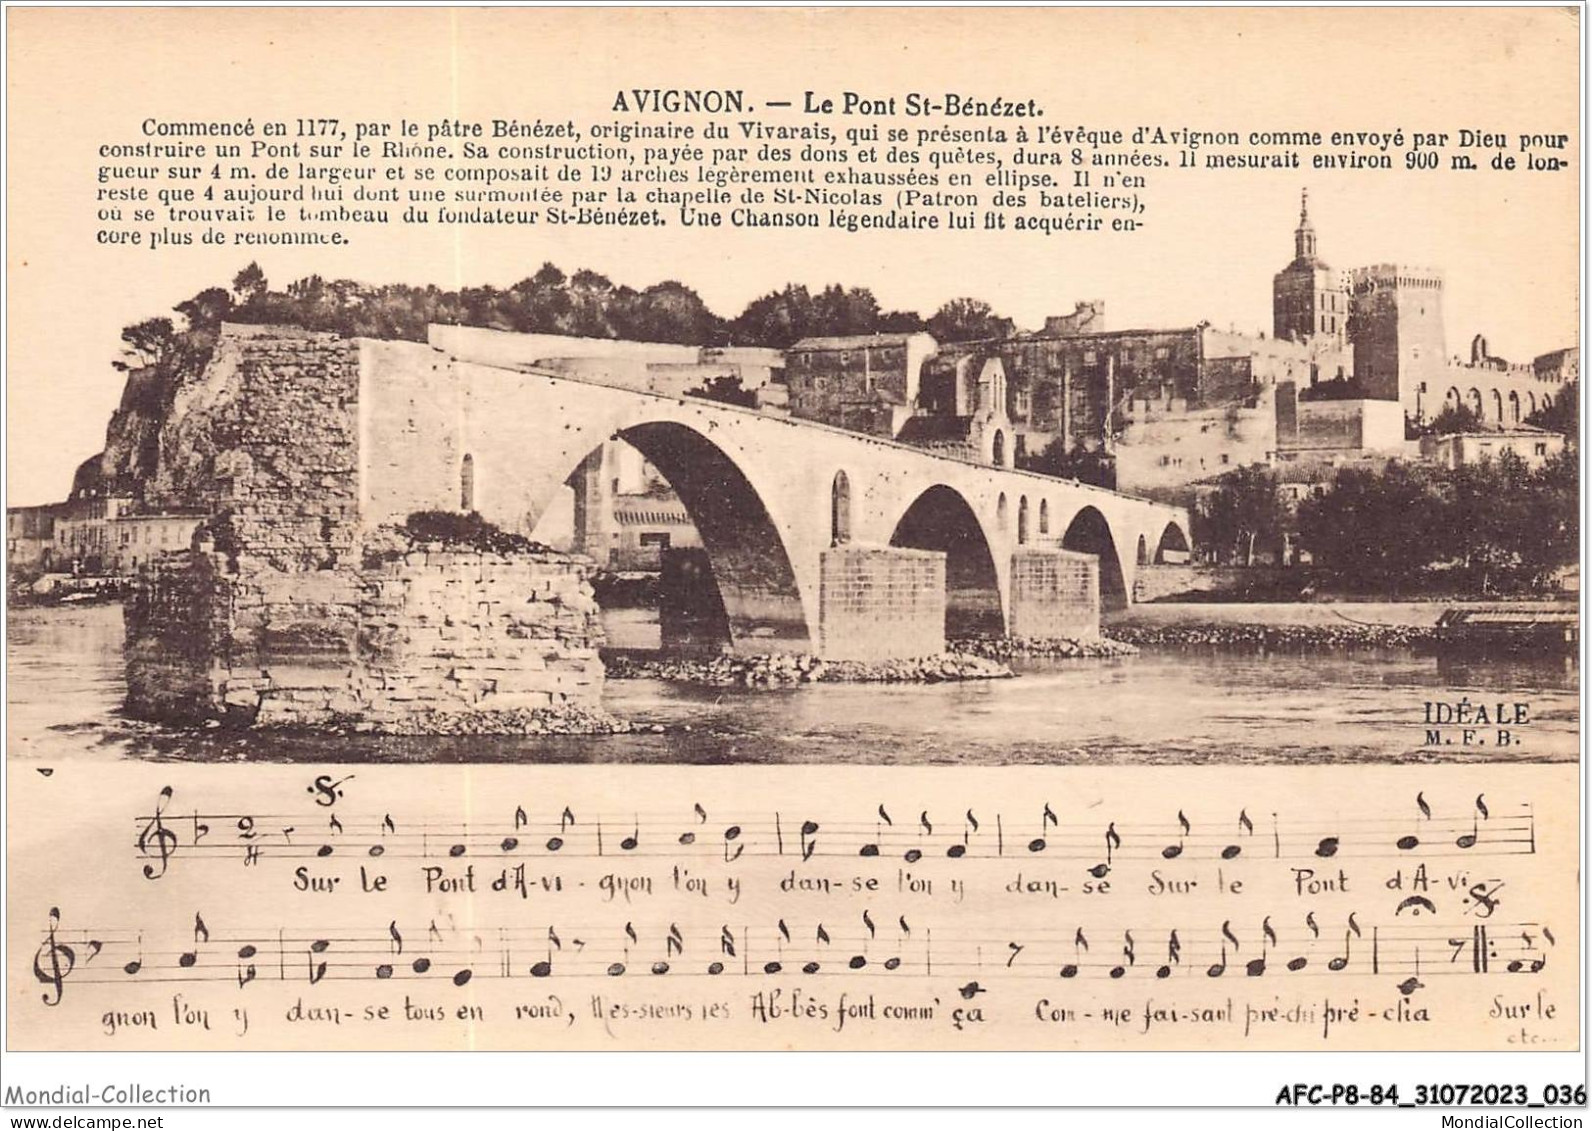 AFCP8-84-0833 - AVIGNON - Le Pont St-bénézet  - Avignon (Palais & Pont)